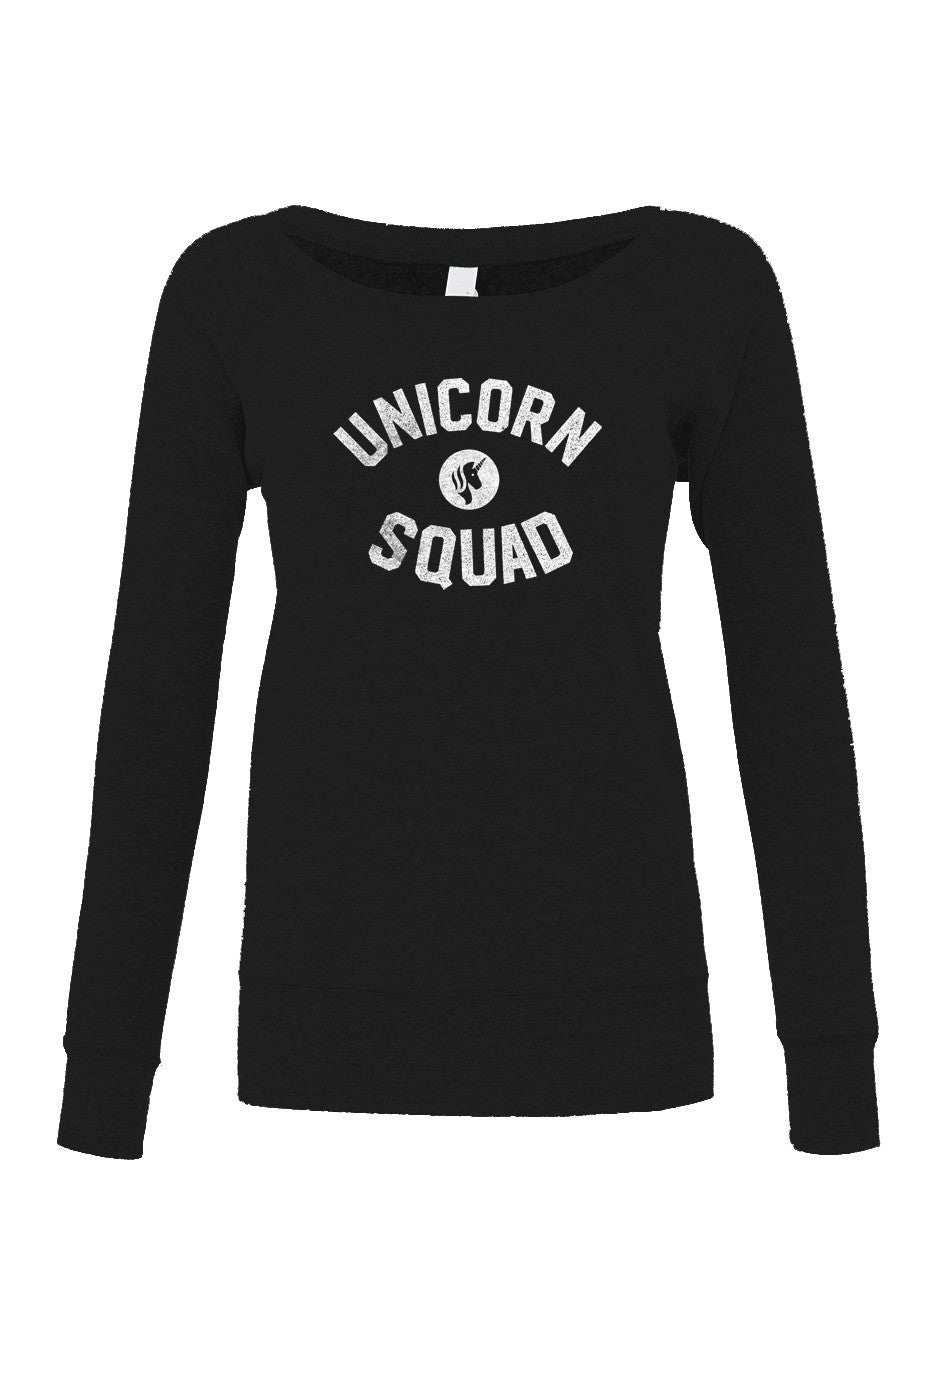 Women's Unicorn Squad Scoop Neck Fleece